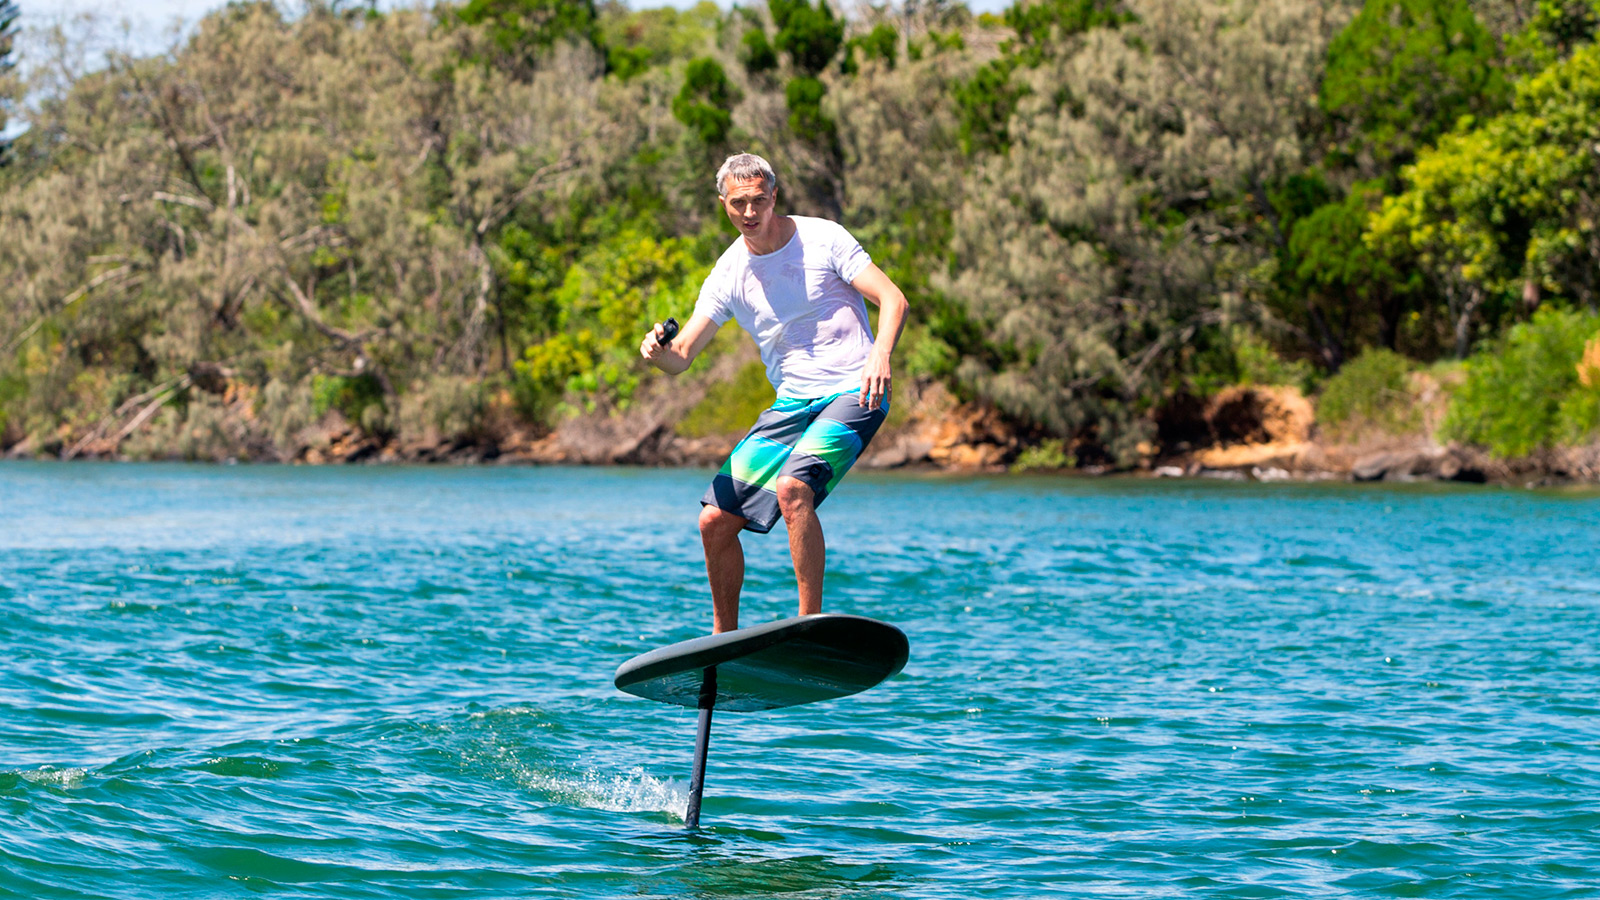 Fliteboard Electric Hydrofoil Surfboard.